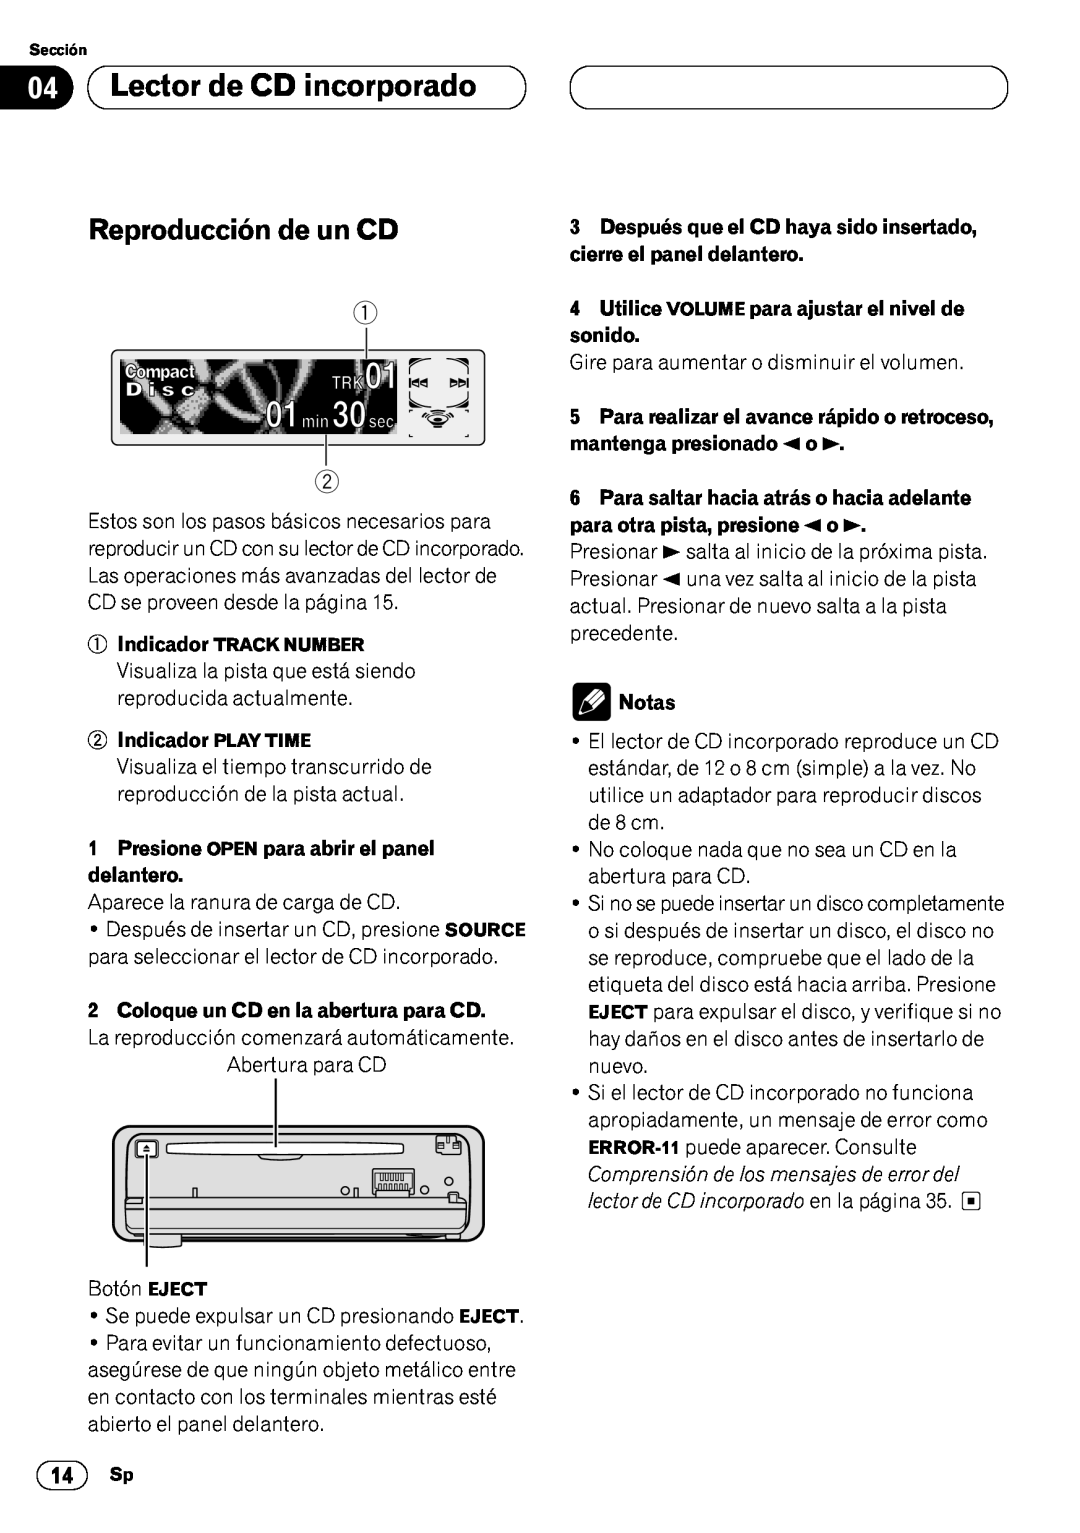 Pioneer DEH-P6450 operation manual Lector de CD incorporado, Reproducción de un CD, Indicador PLAY TIME, Notas 